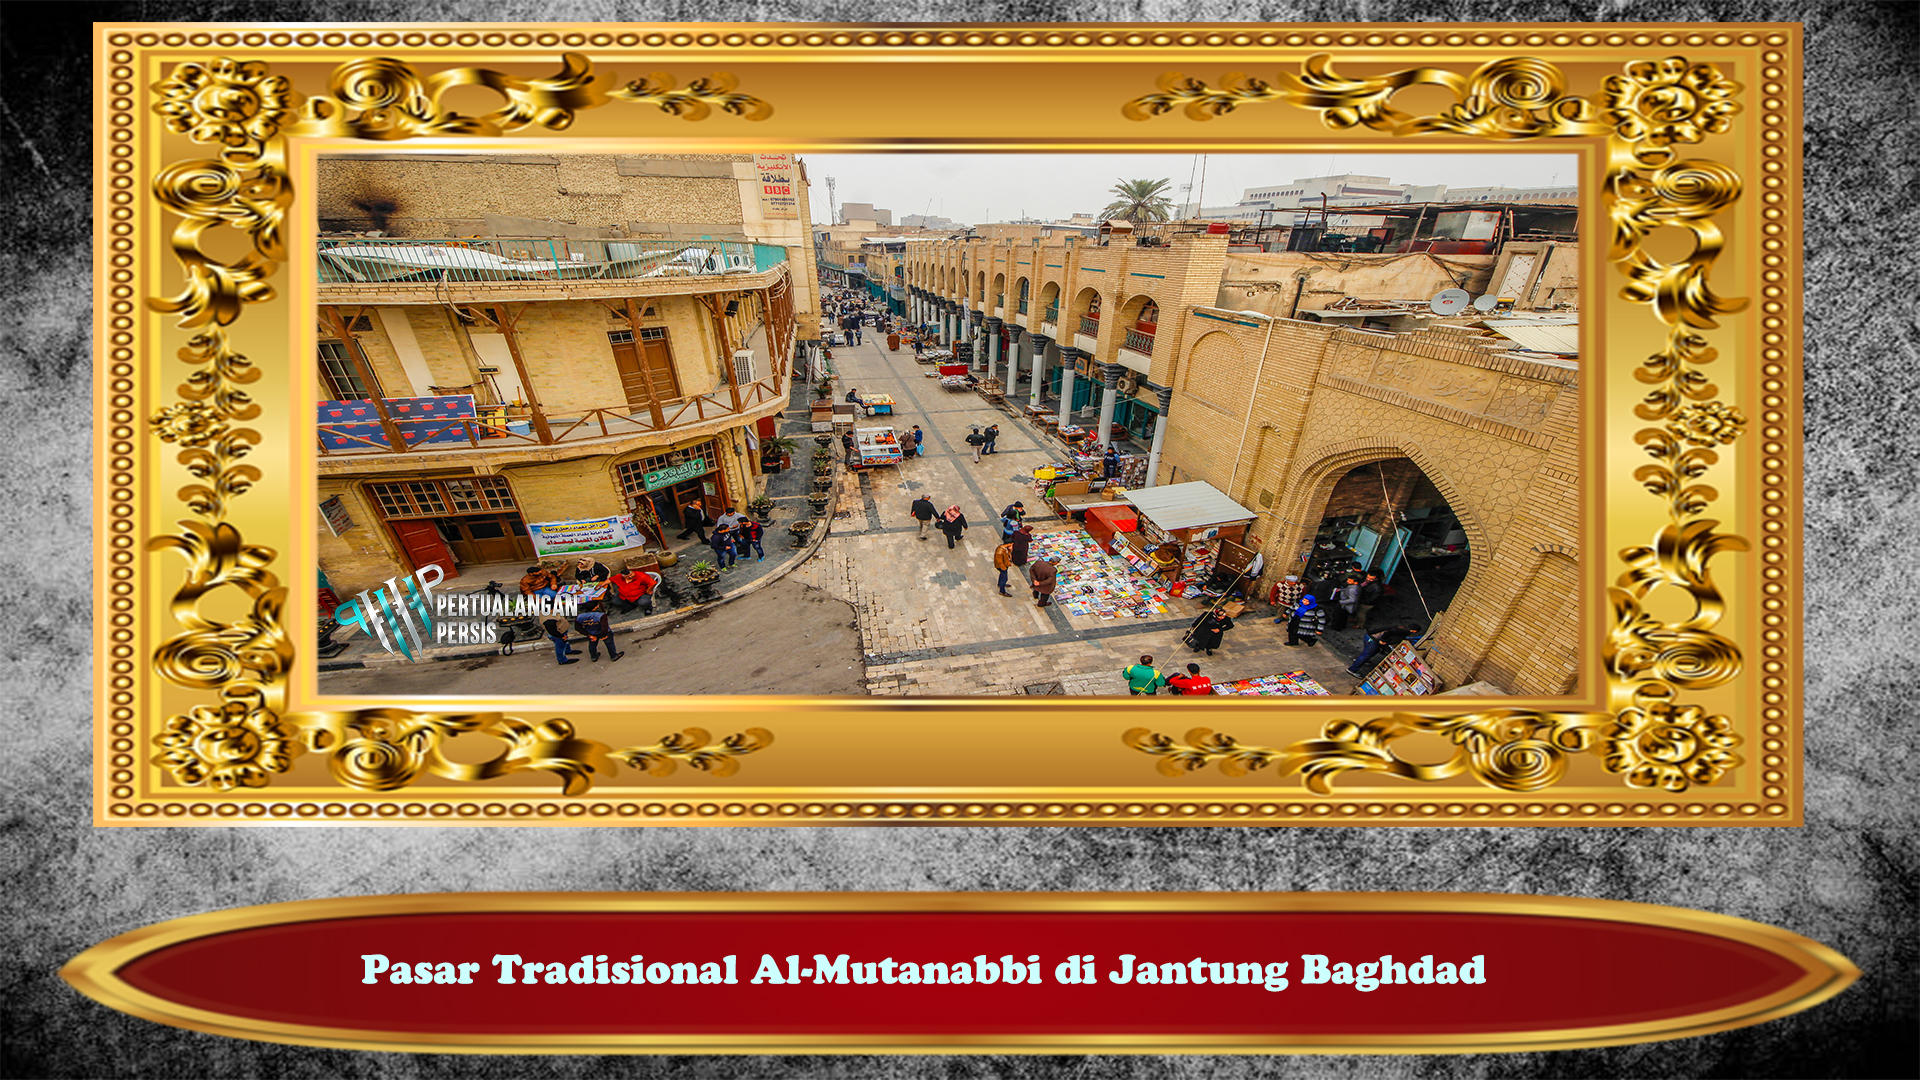 Pasar Tradisional Al-Mutanabbi di Jantung Baghdad